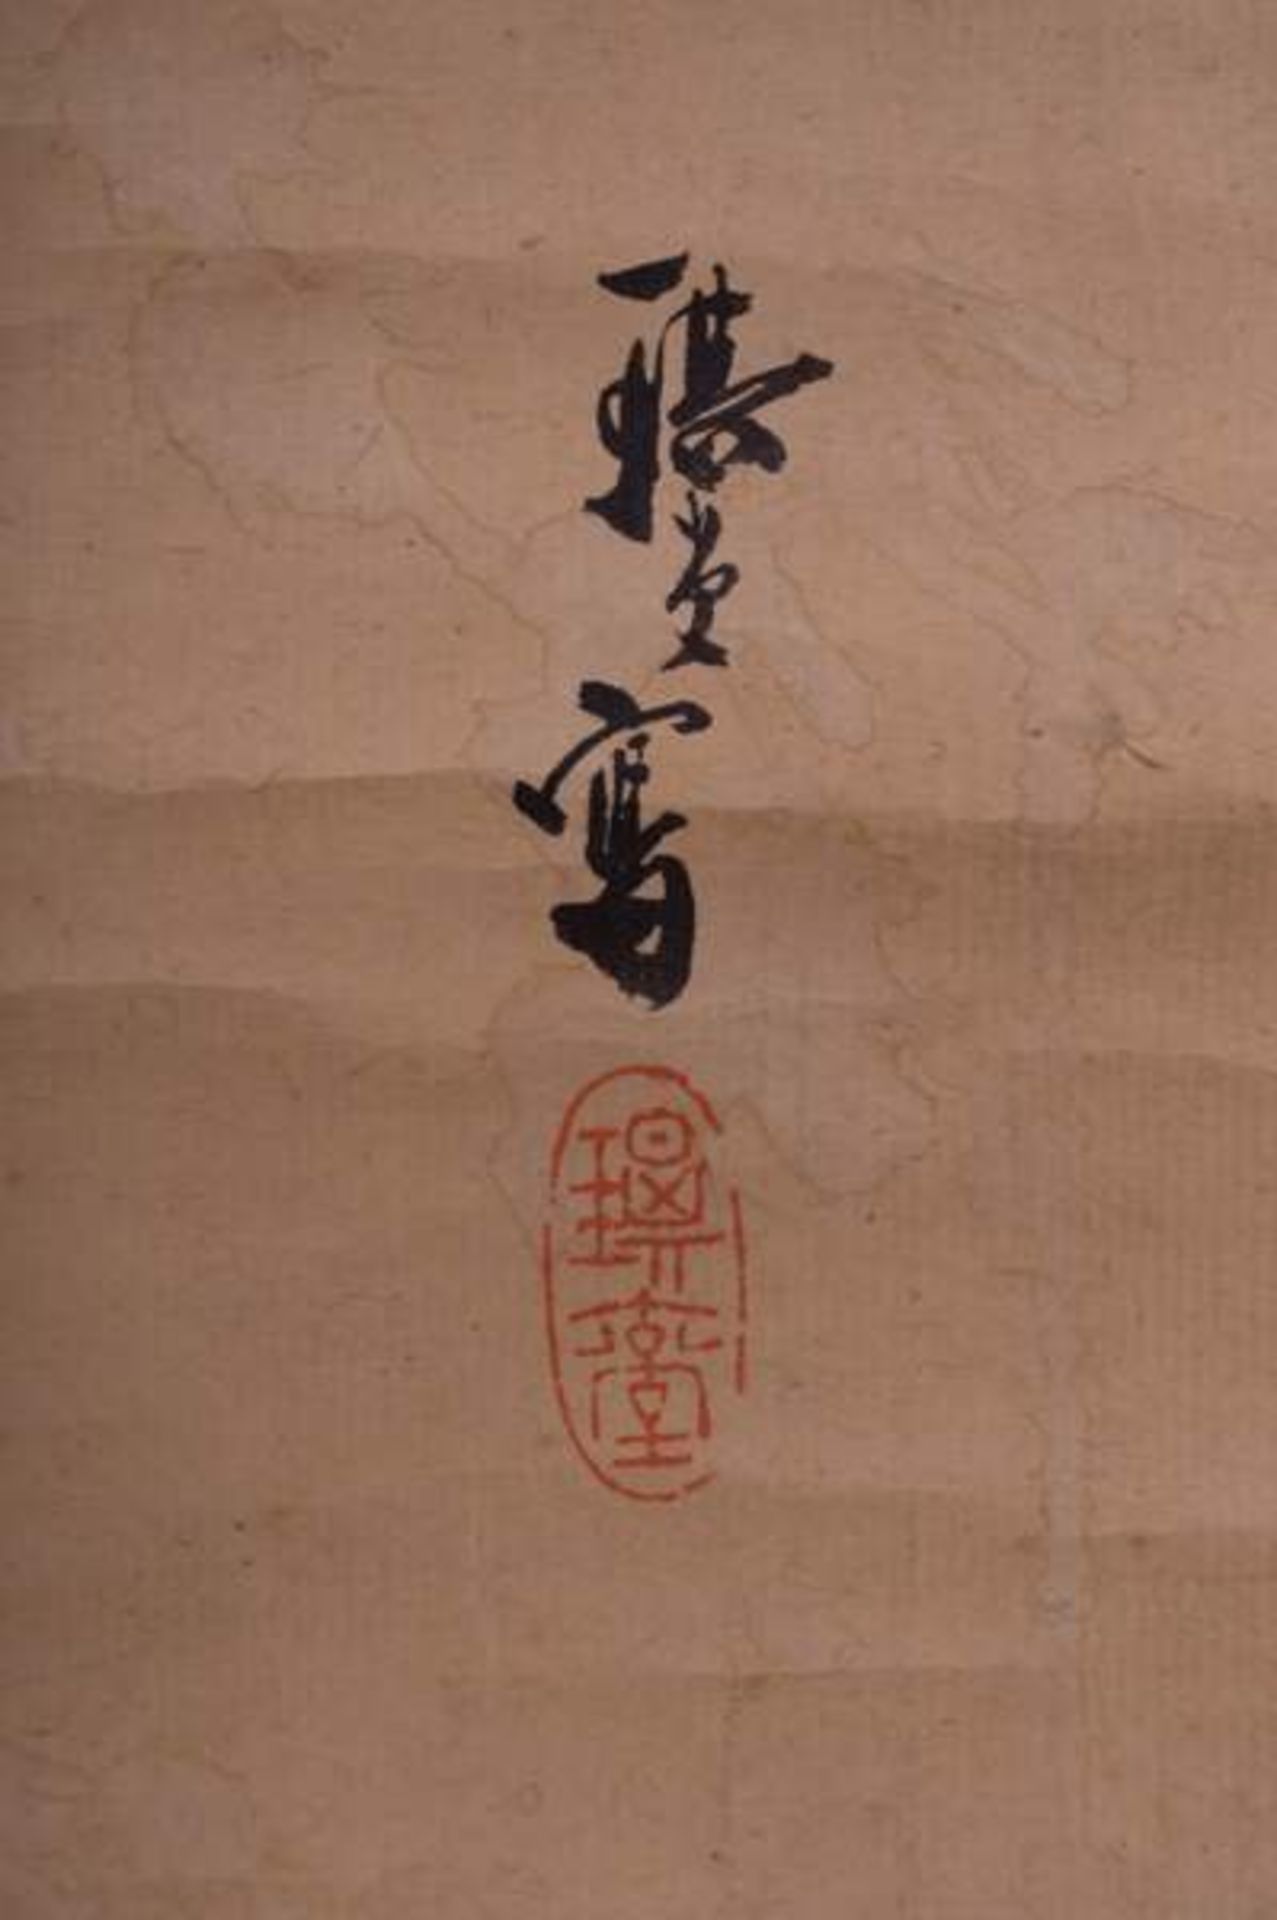 Rollbild China / Scroll painting, China "auffliegender Vogel(Kingfischer)", Tusch-Malerei auf - Bild 3 aus 5